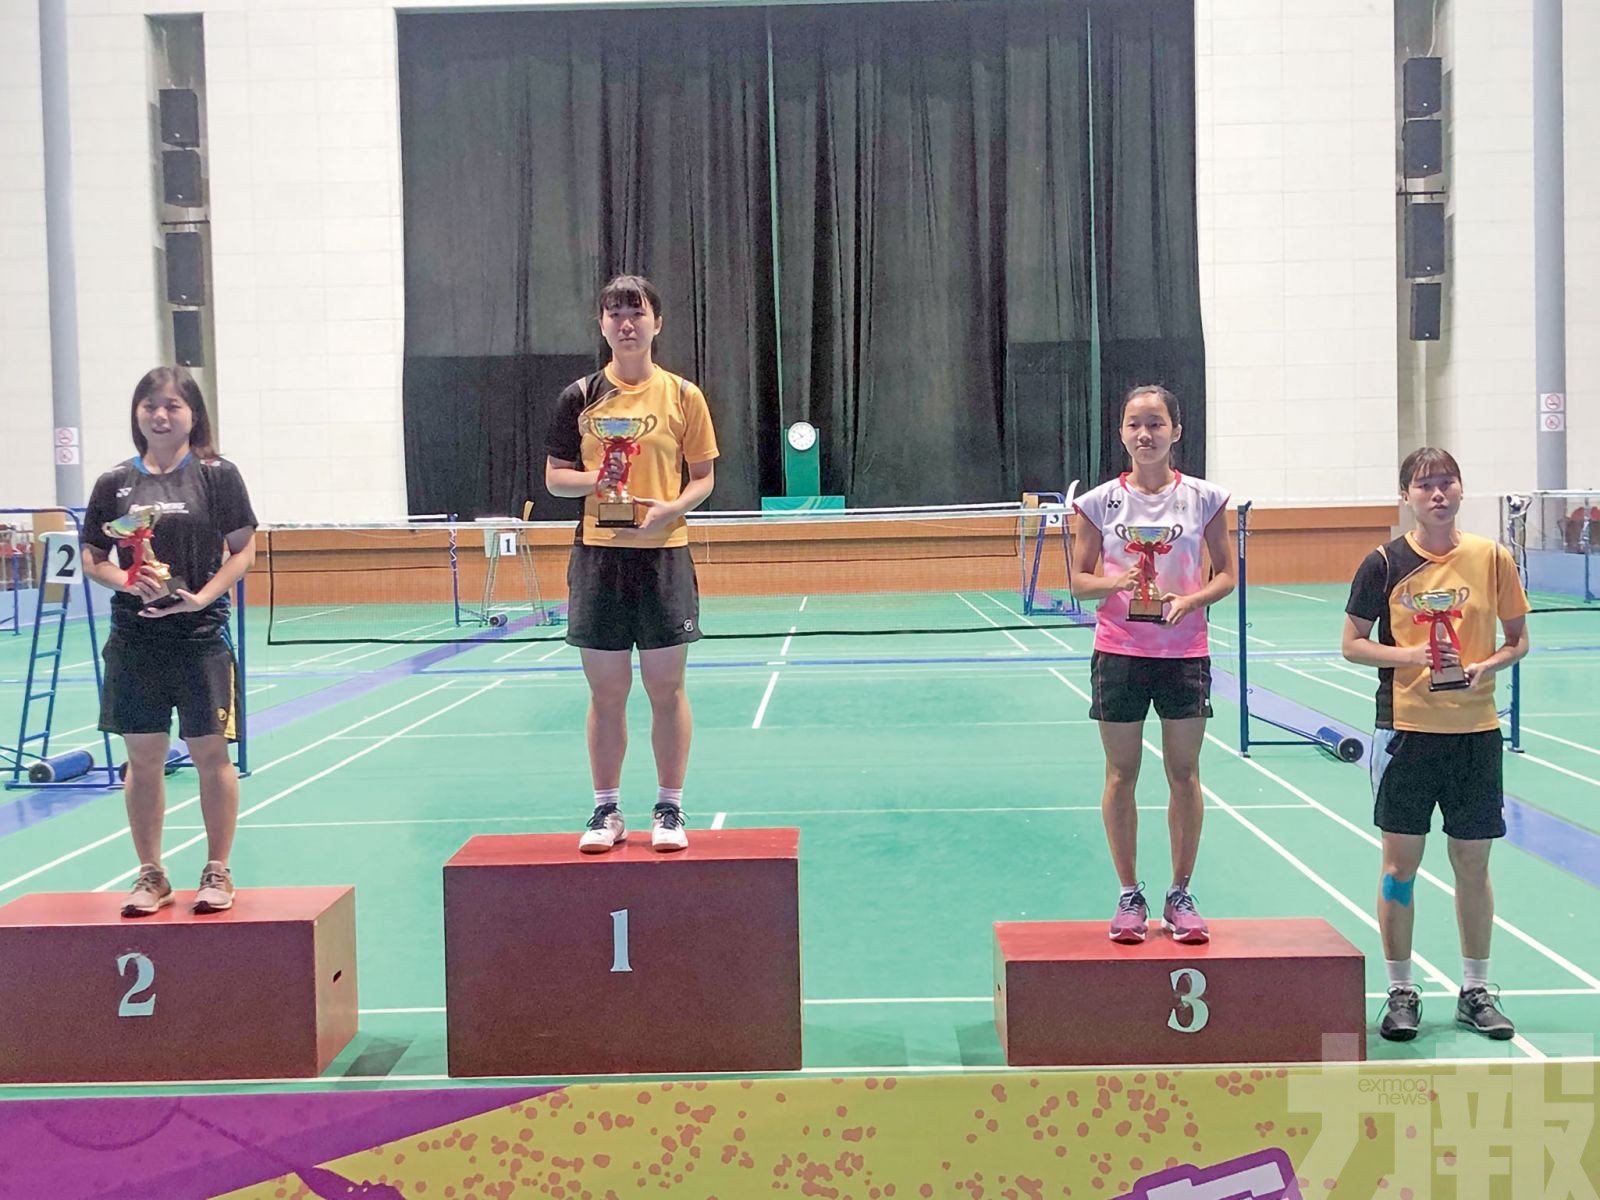 「裴氏兄妹」衛冕全澳羽賽男女單錦標